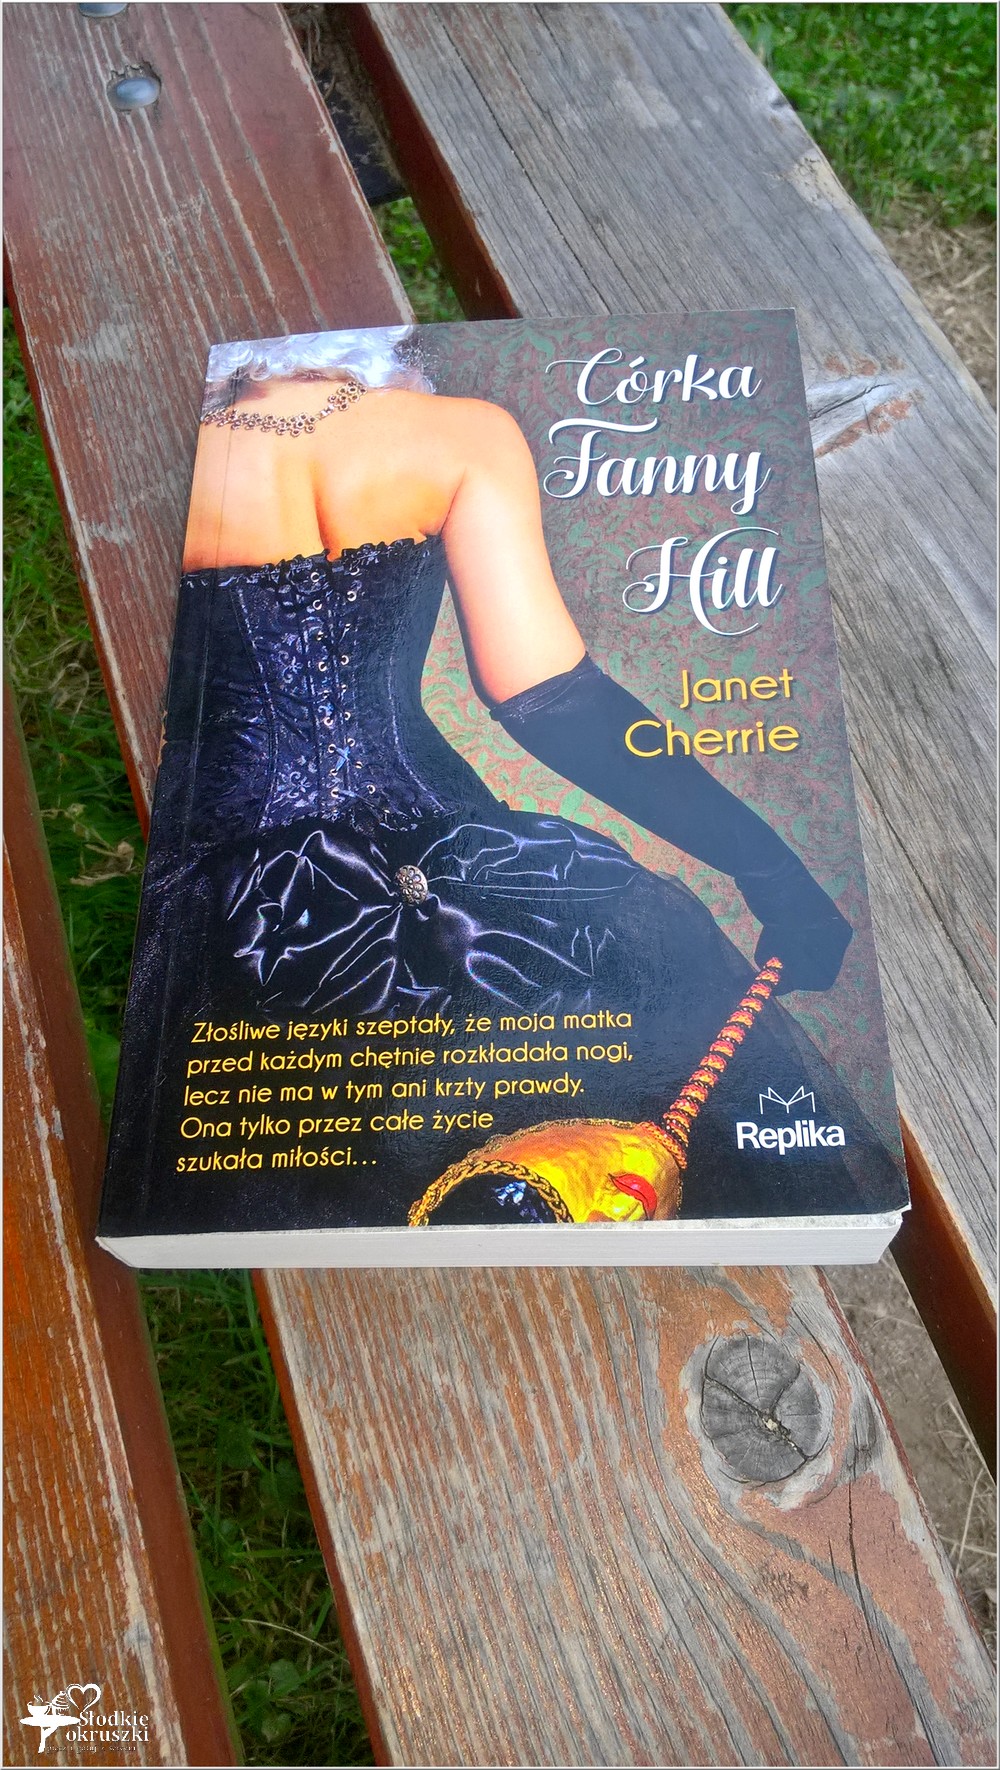 Córka Fanny Hill. Janet Cherrie (1)